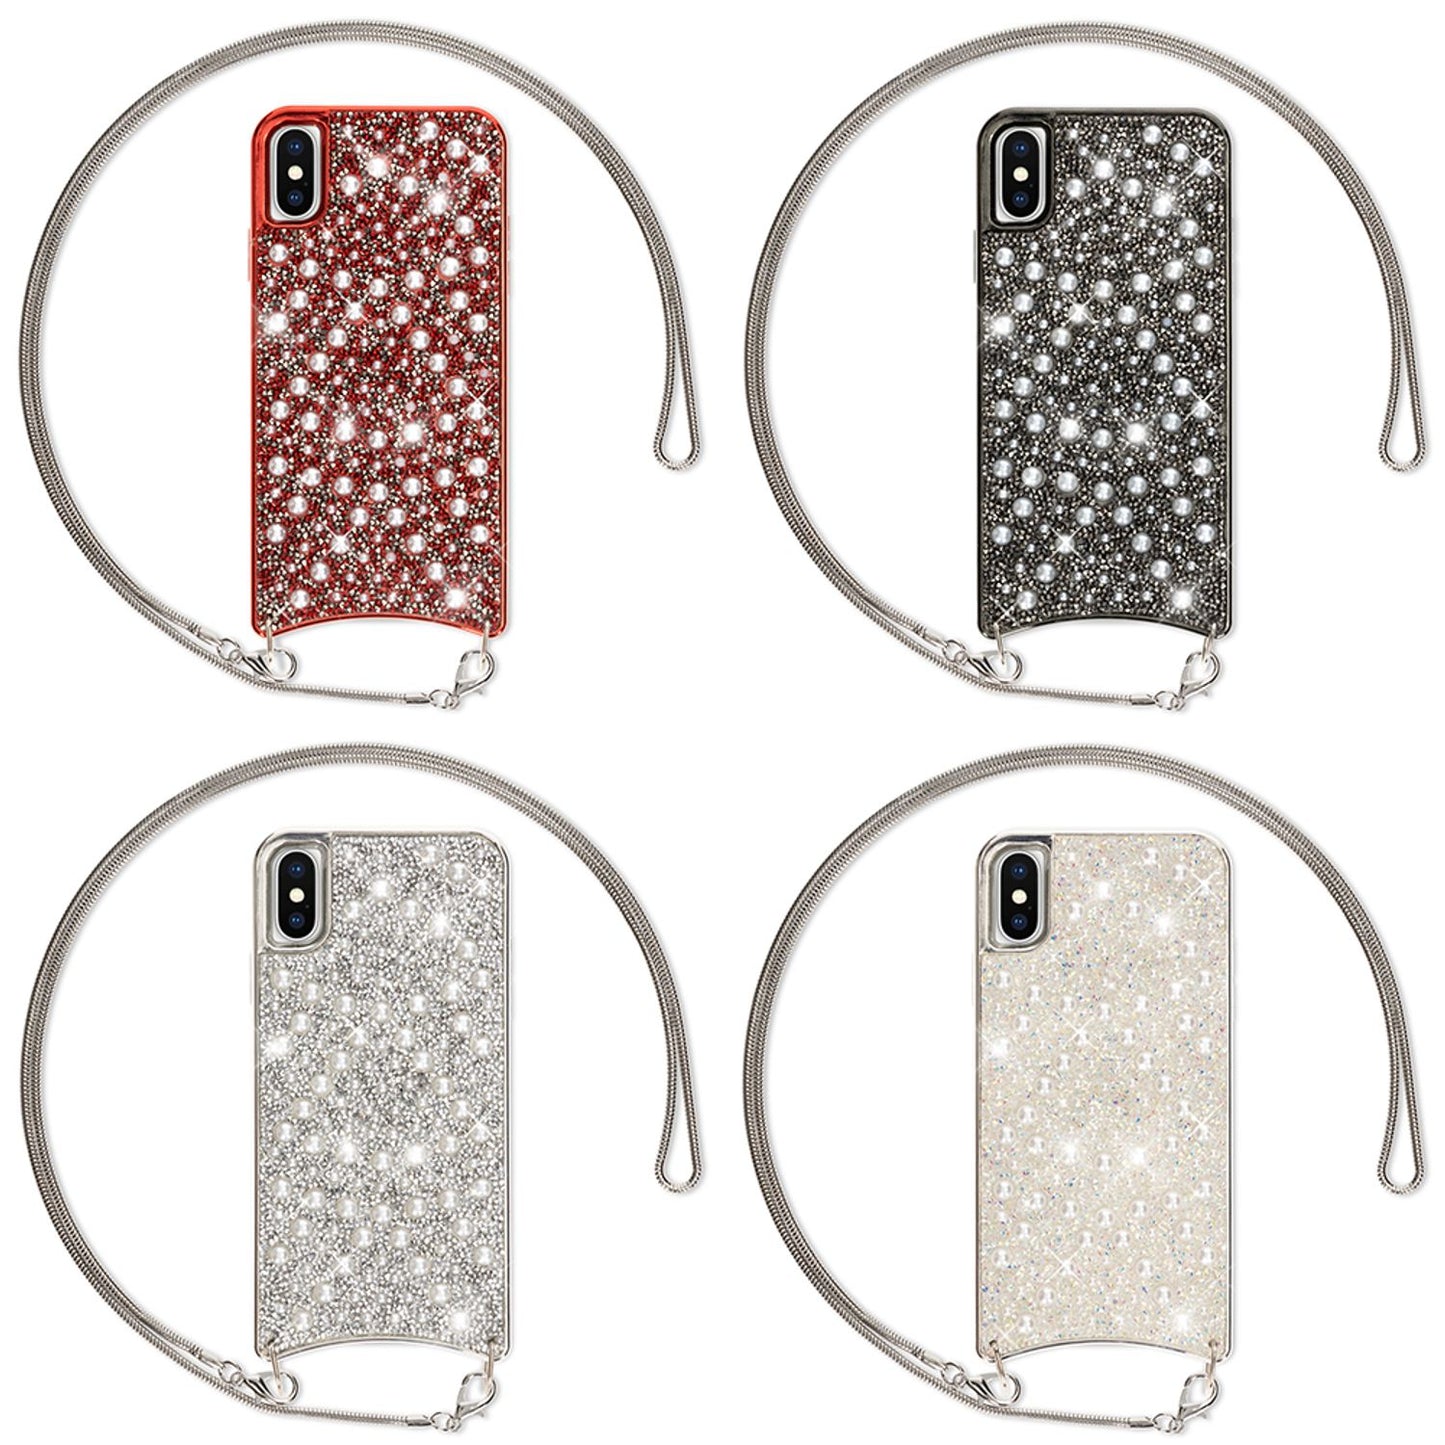 NALIA Glitzer Handyhülle mit Kette für iPhone XS Max, Necklace Pailletten Cover Case